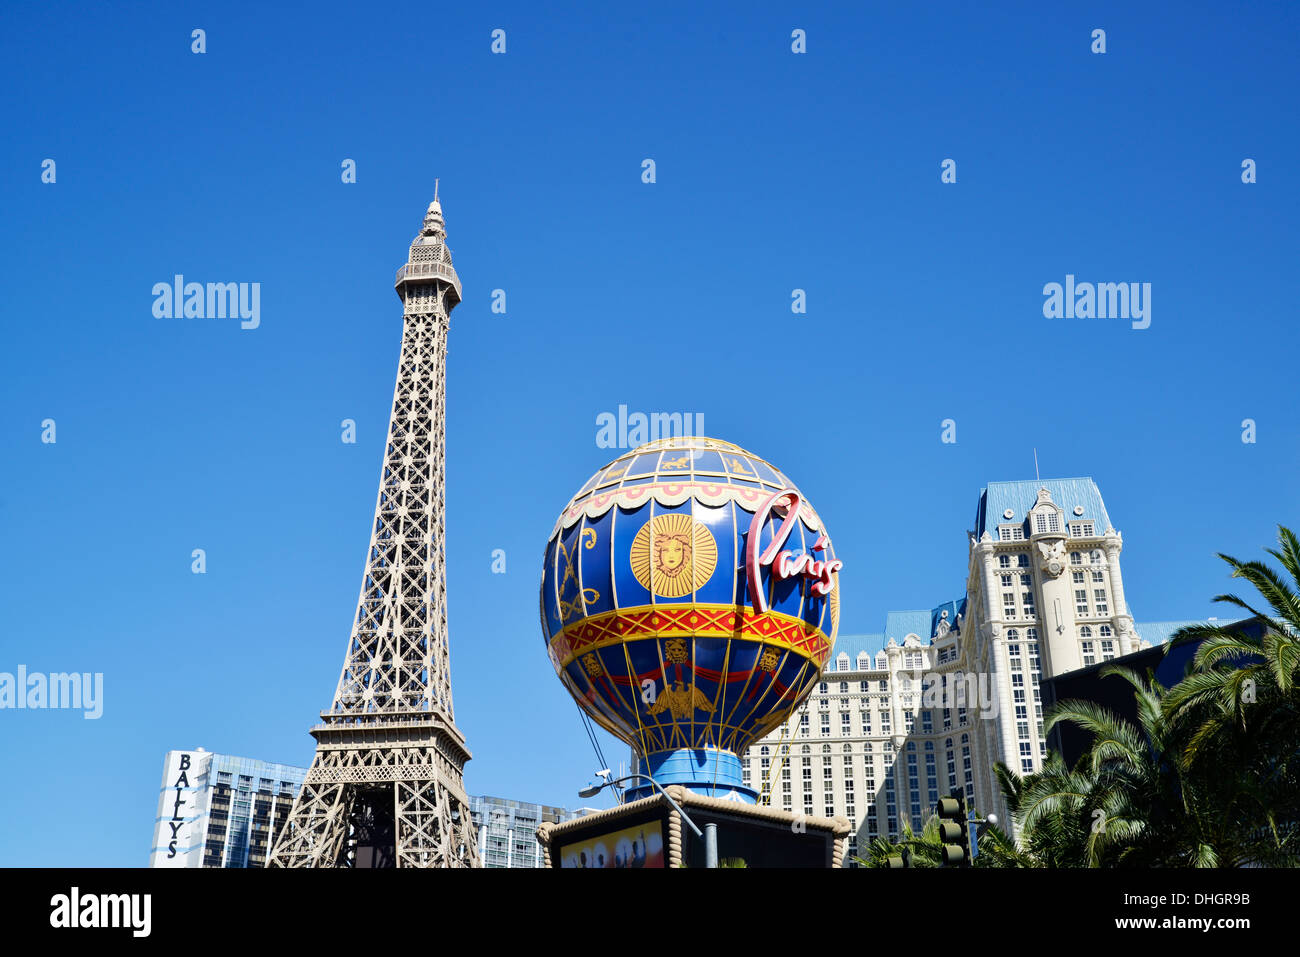 Mira el Paris Hotel Complejo en el Strip de Las Vegas, NV, EE.UU. Foto de stock